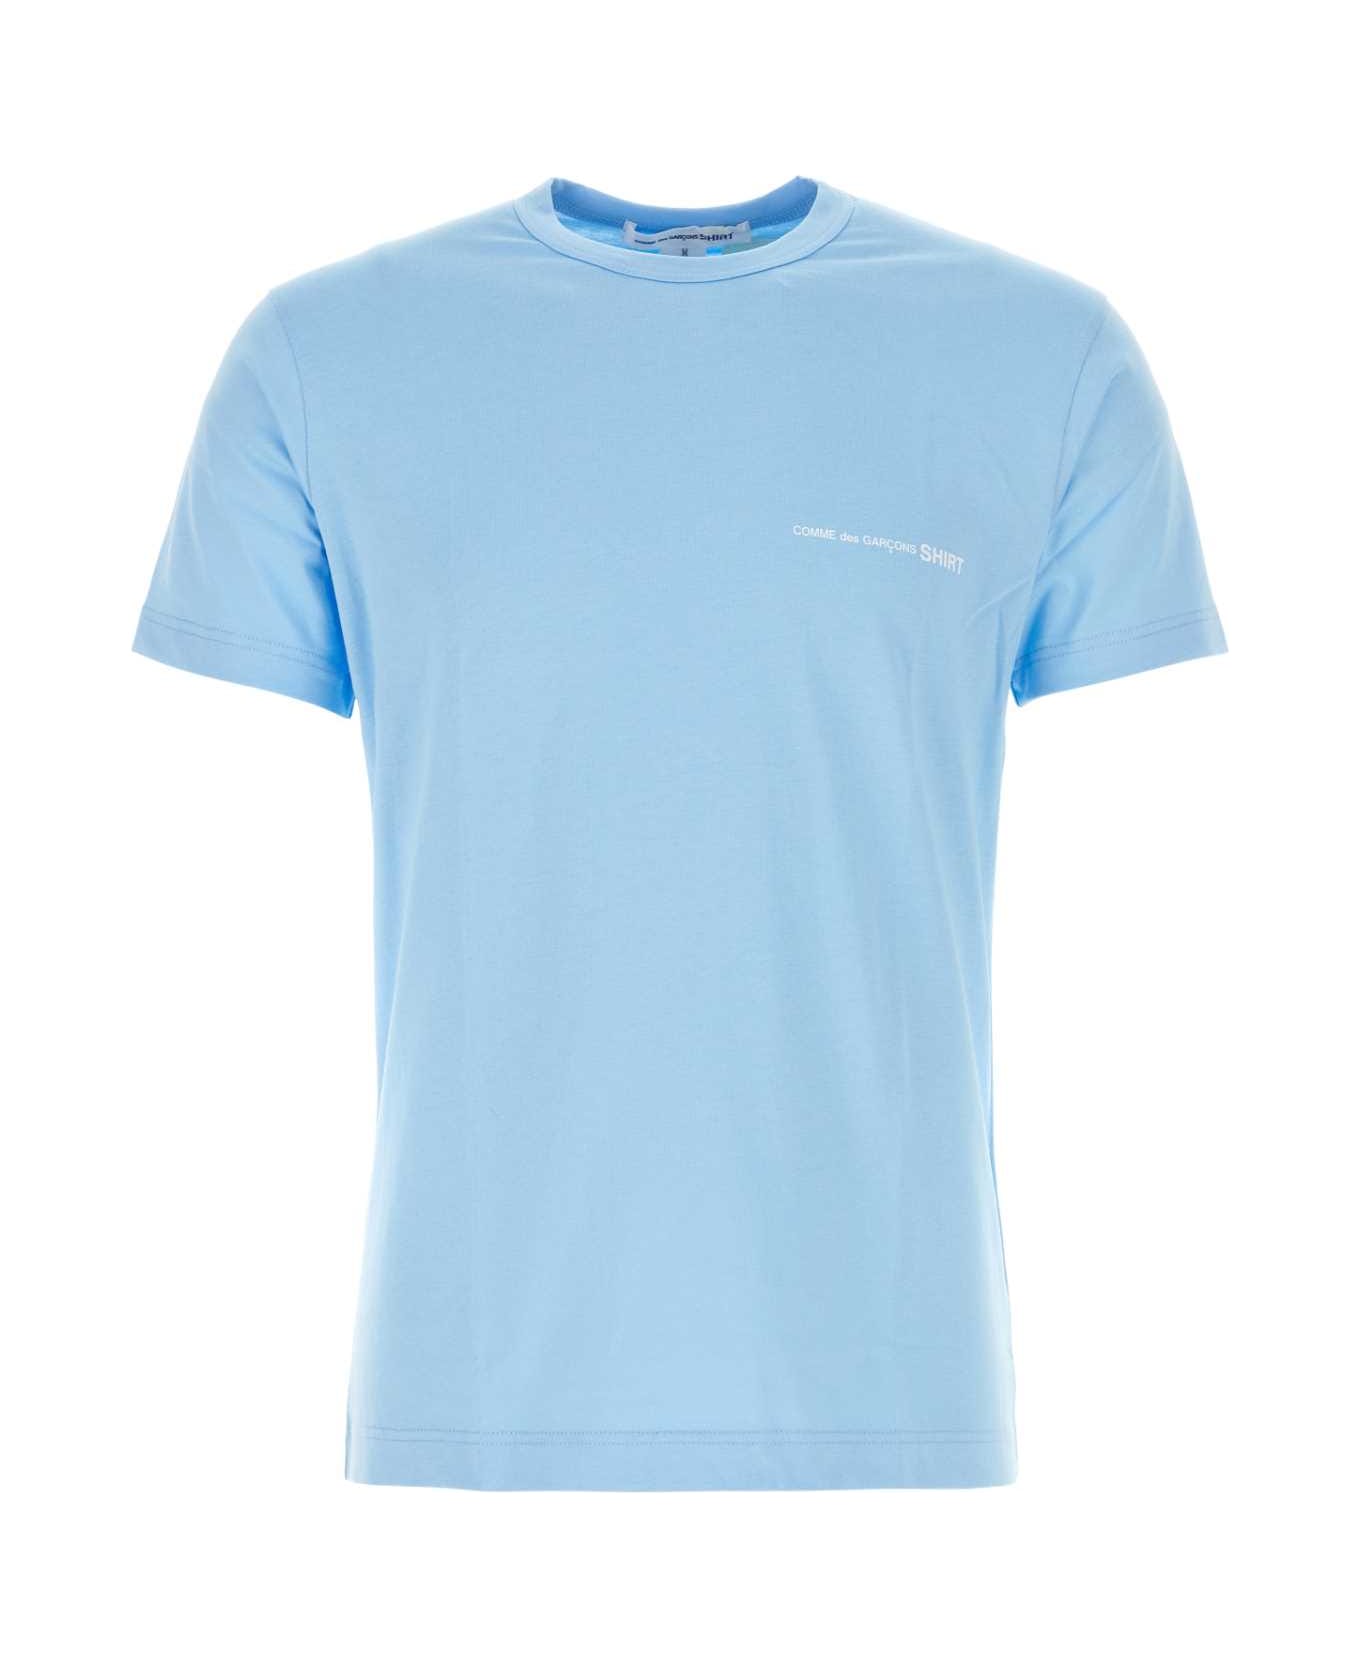 Swim Shirt Camiguin Toddler Little Kids Big Kids Light Blue Cotton T-shirt - BLUE